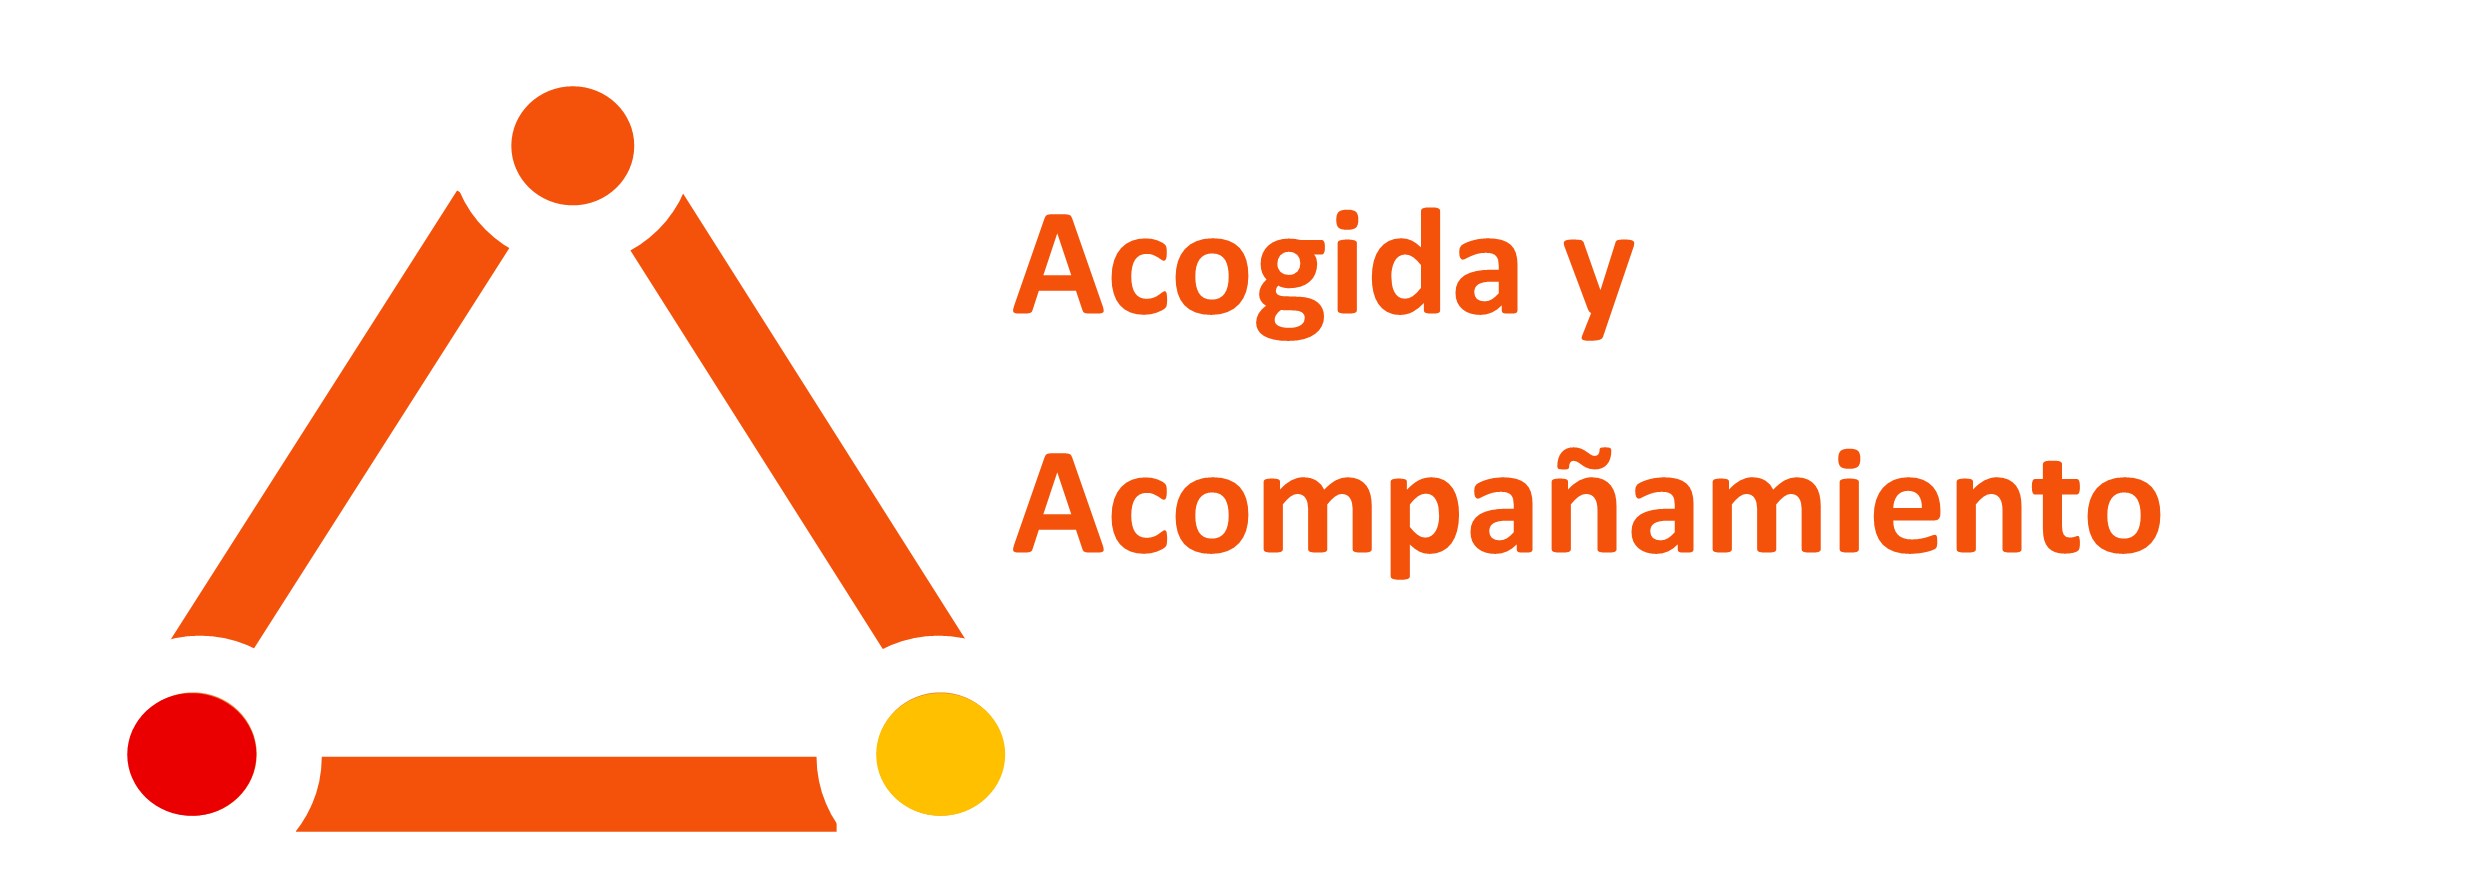 Acogida_Acompañamiento_StopFMF